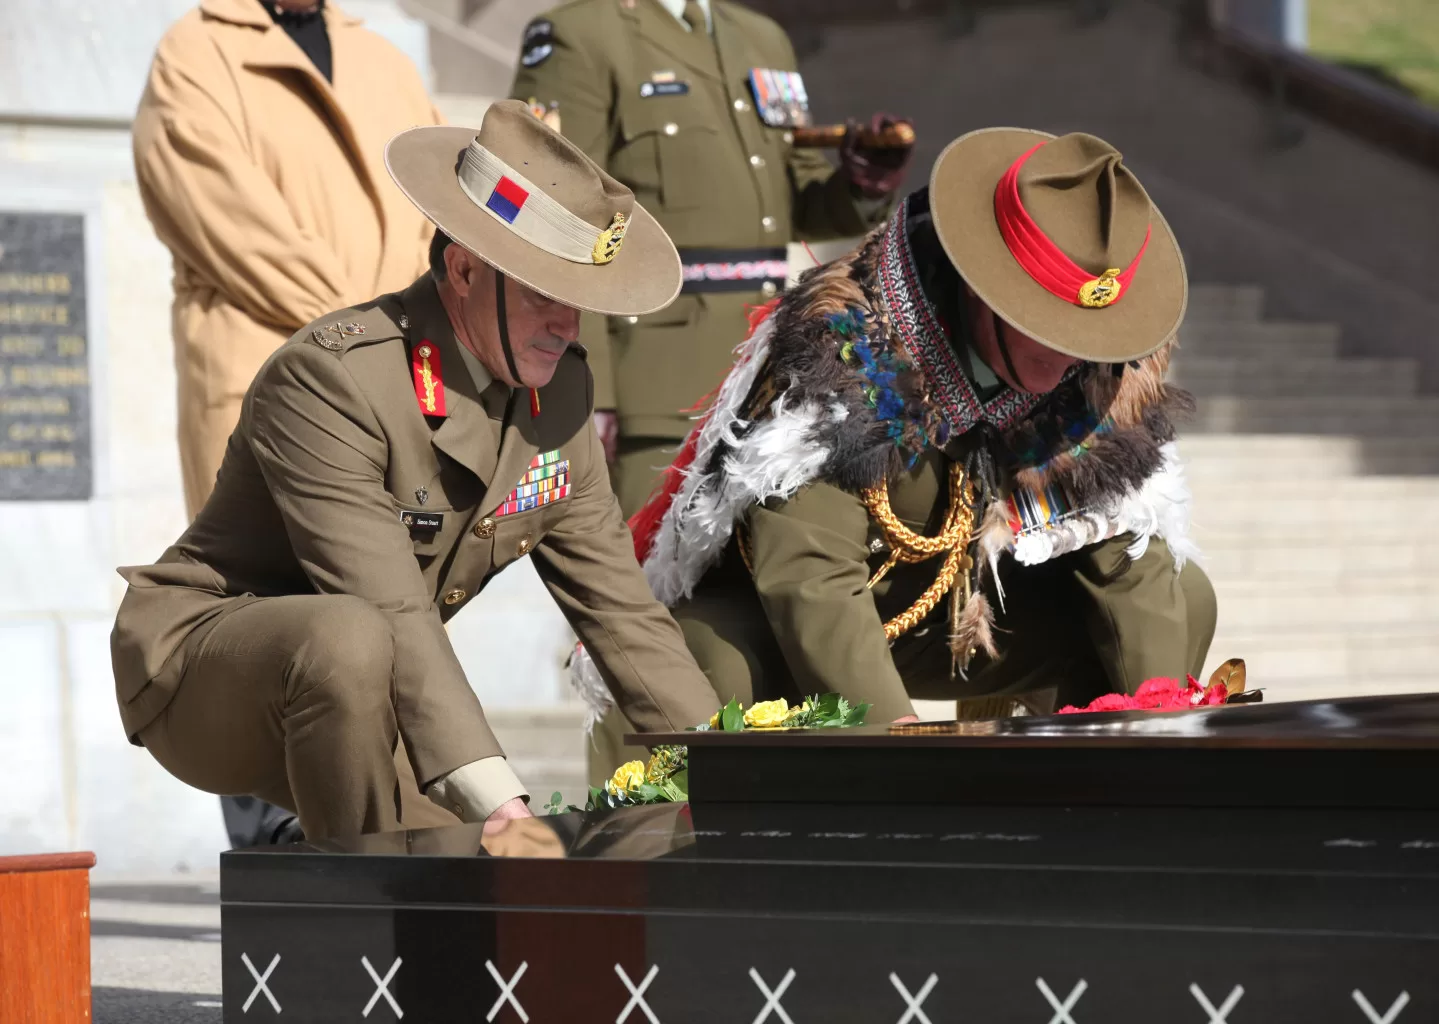 澳大利亚陆军参谋长斯图尔特中将与新西兰陆军参谋长博斯韦尔少将一起在无名战士墓前献花圈。